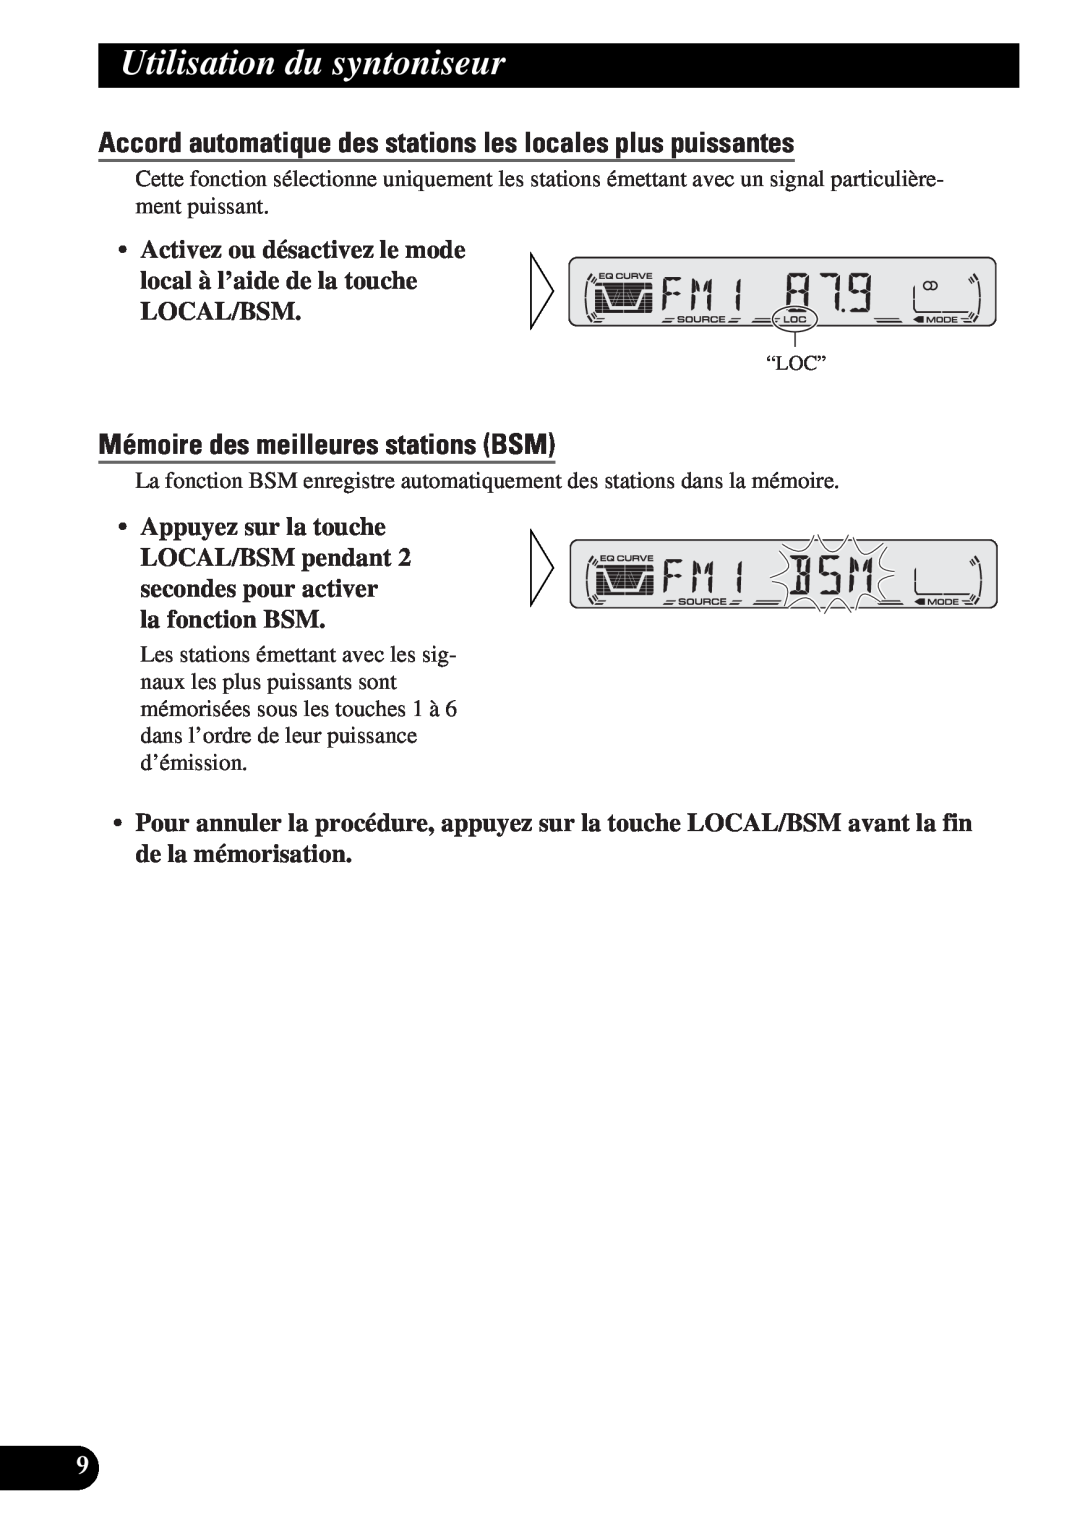 Pioneer DEH-12 operation manual Utilisation du syntoniseur, Mémoire des meilleures stations BSM 